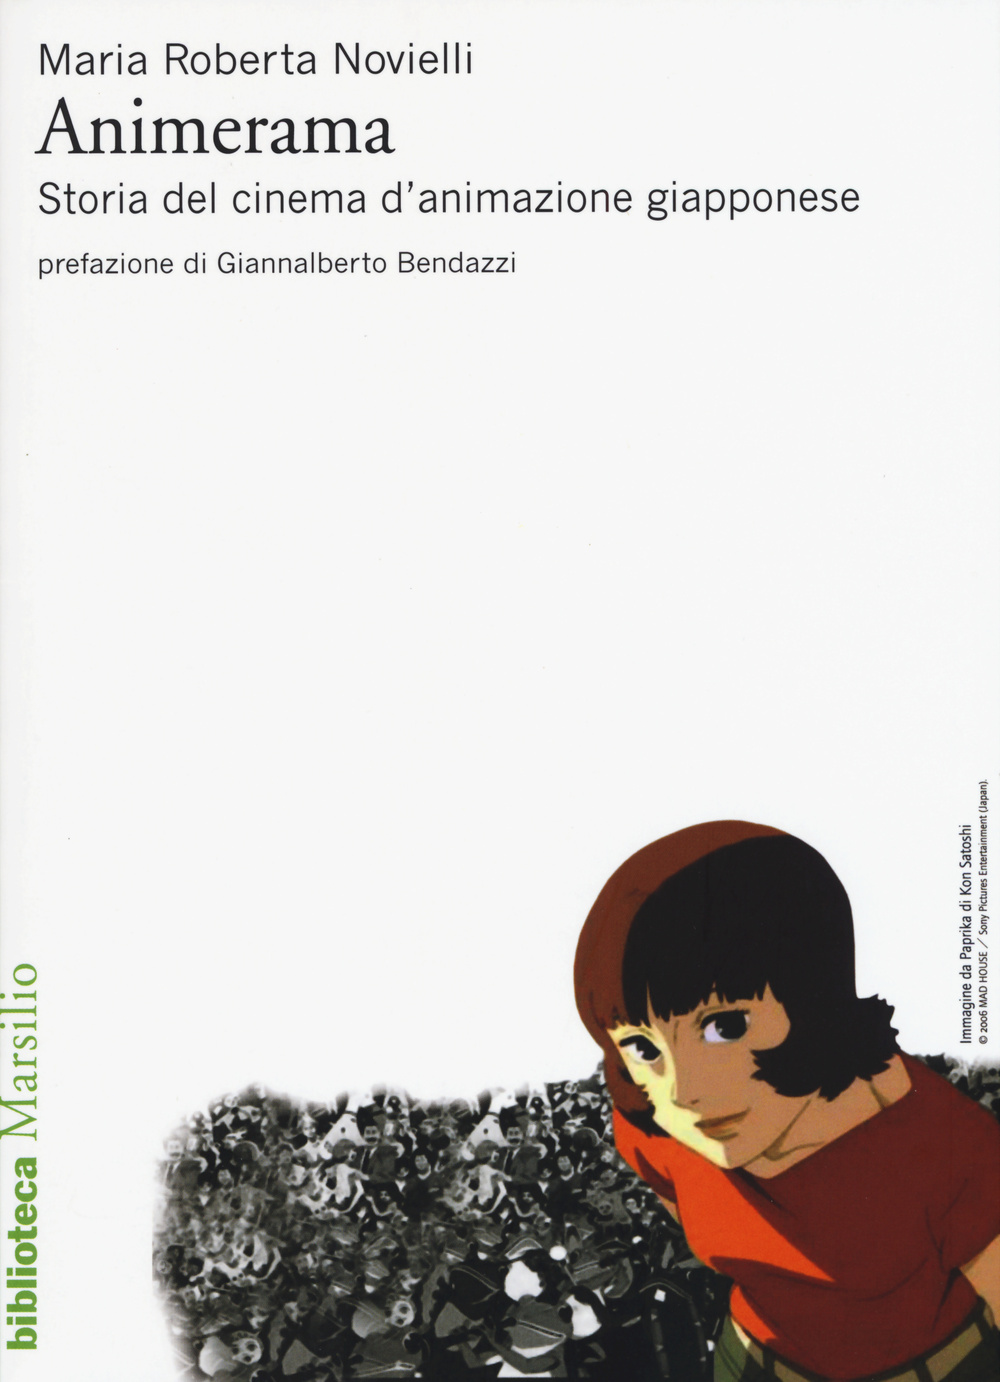 Libri Novielli Maria Roberta - Animerama. Storia Del Cinema D'Animazione Giapponese NUOVO SIGILLATO, EDIZIONE DEL 26/02/2015 SUBITO DISPONIBILE